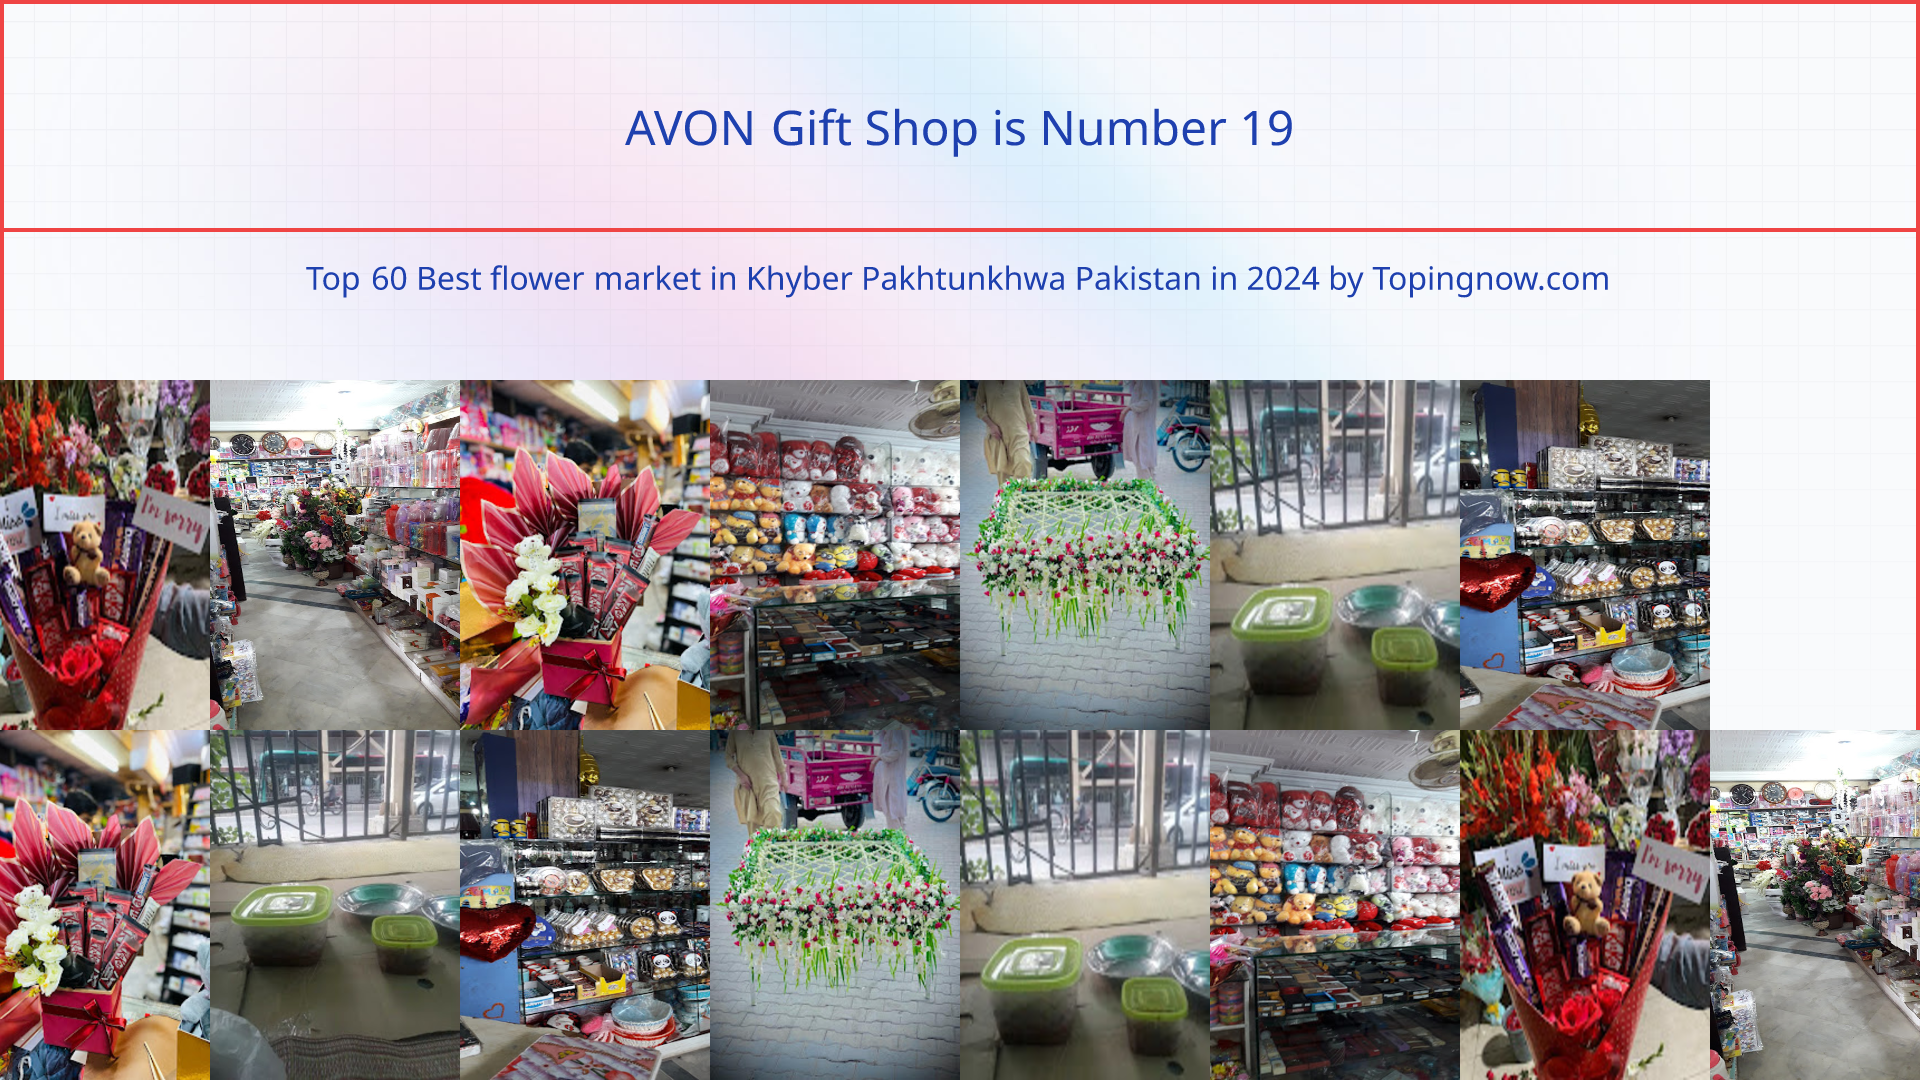 AVON Gift Shop: Top 60 Best flower market in Khyber Pakhtunkhwa Pakistan in 2024